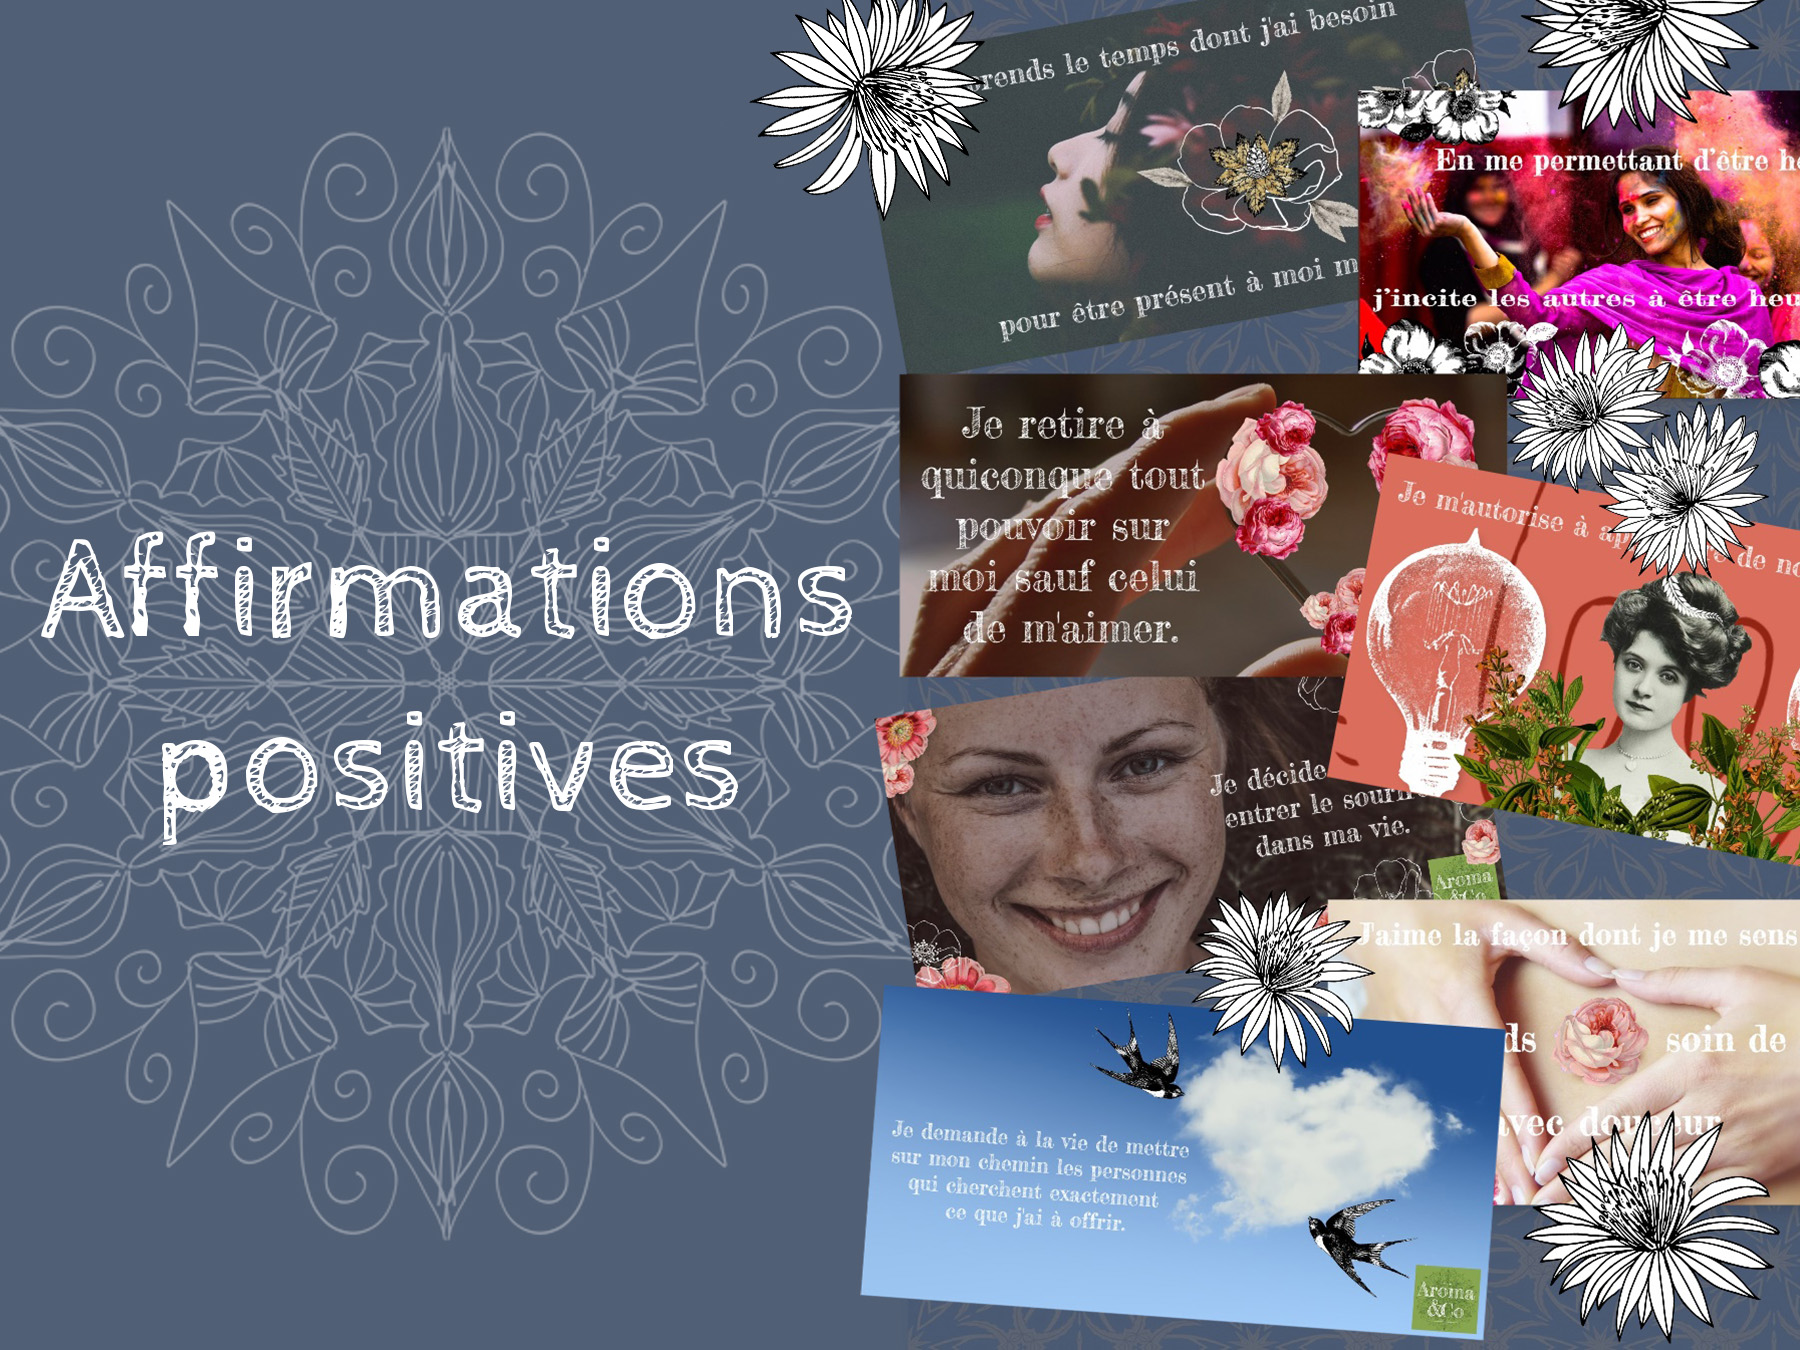 Affirmations positives et illustrations de fleurs